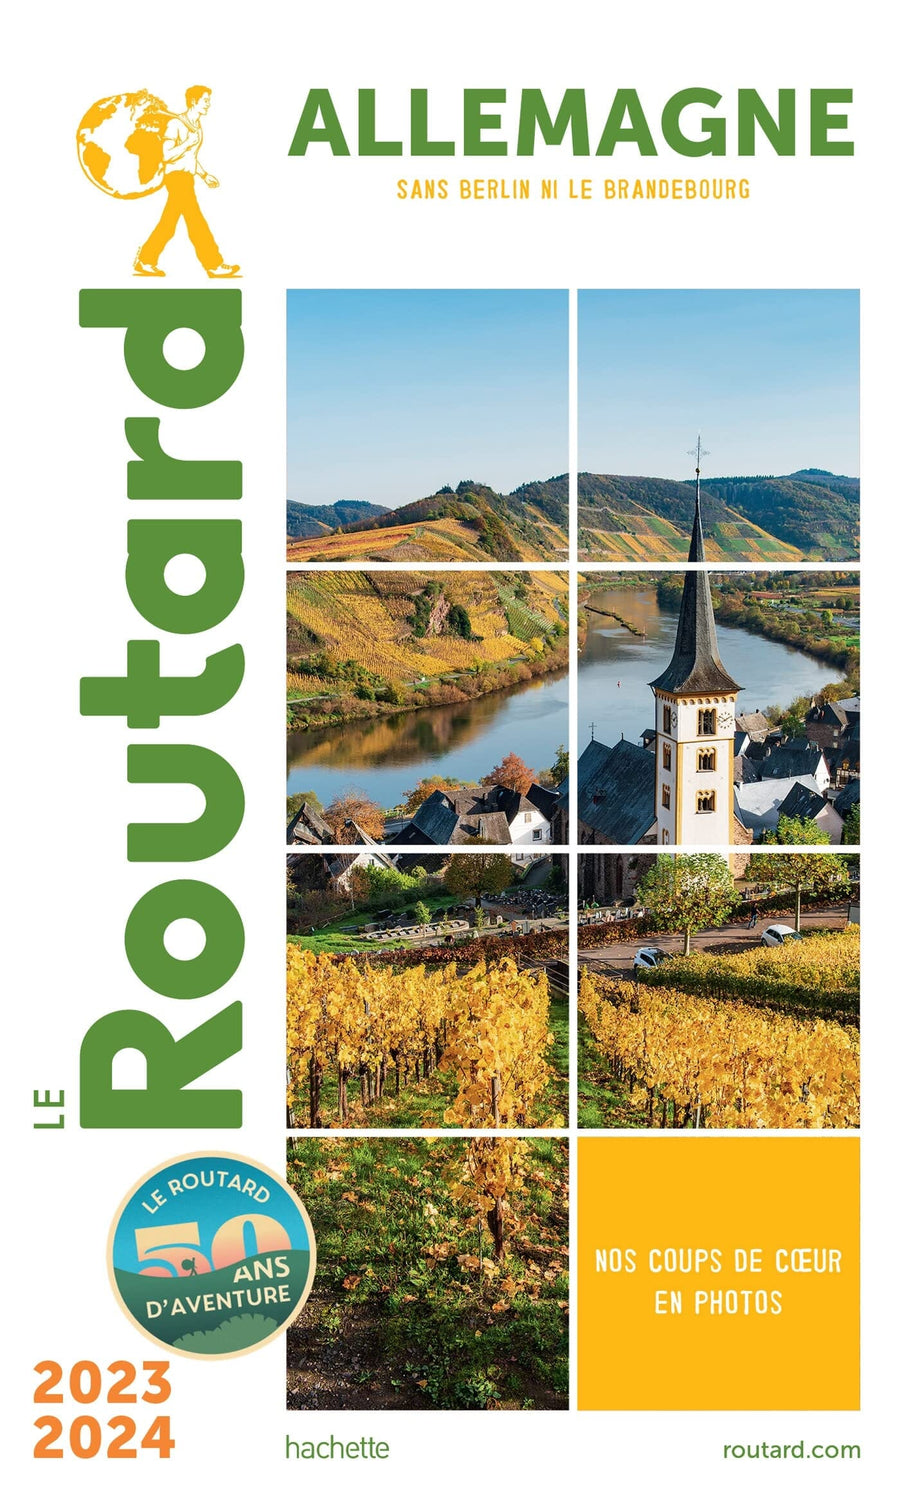 Guide du Routard - Allemagne (sans Berlin ni le Brandebourg) 2023/24 | Hachette guide de voyage Hachette 